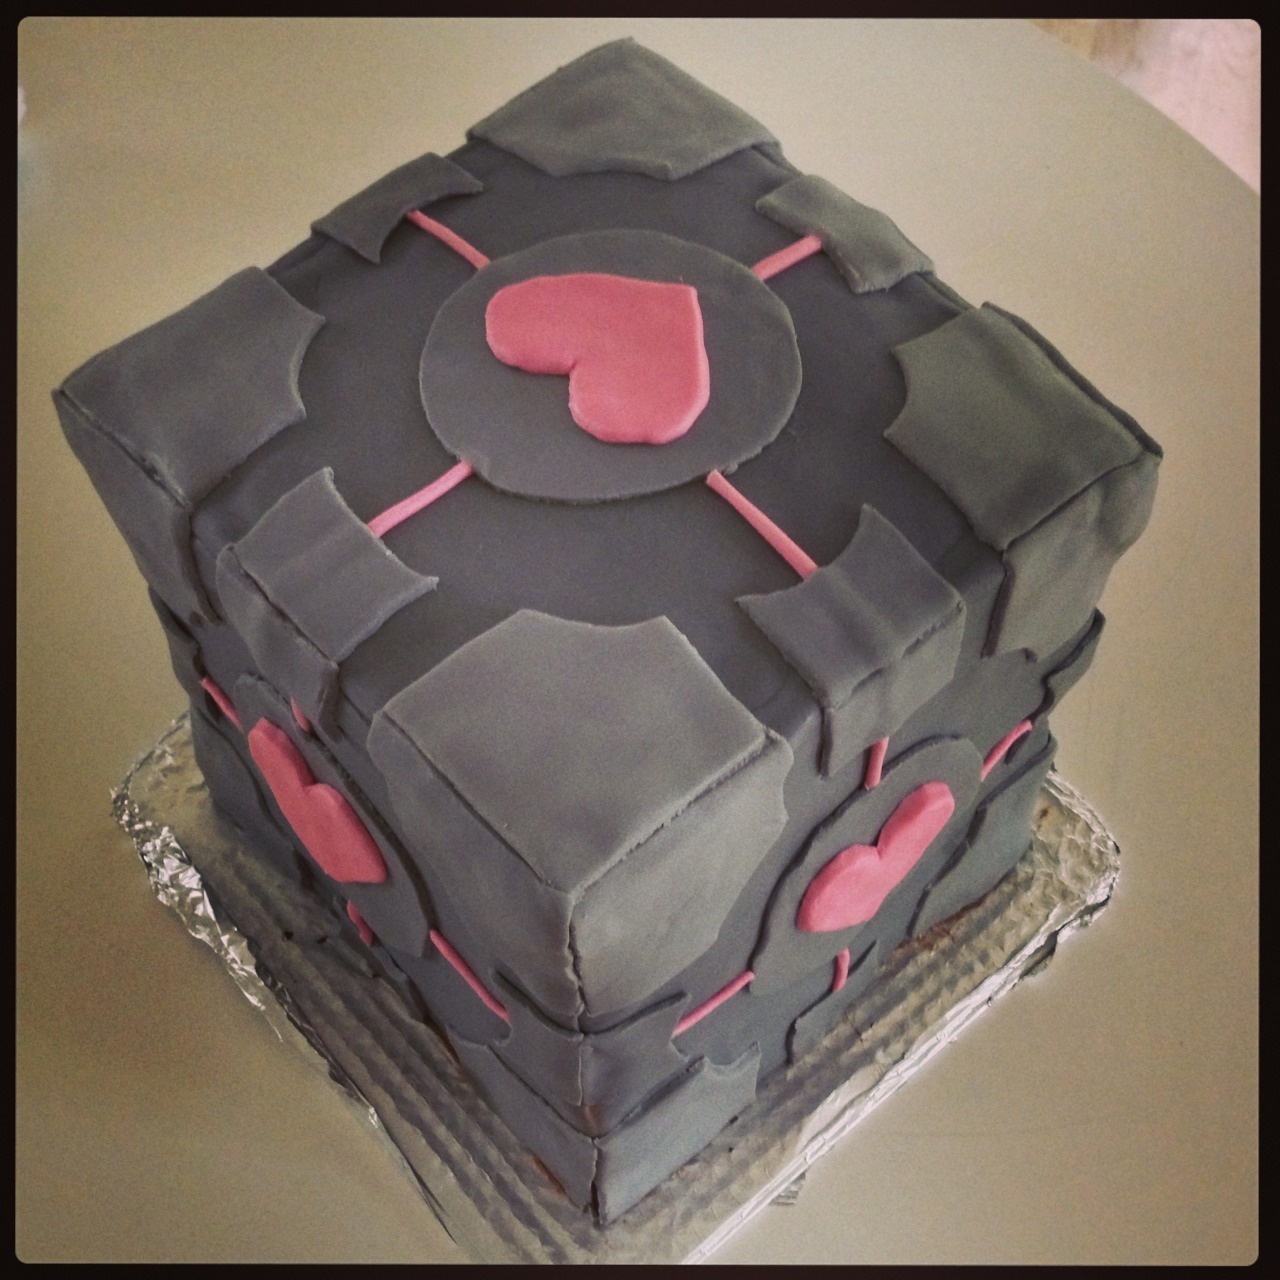 Companion Cube Cake